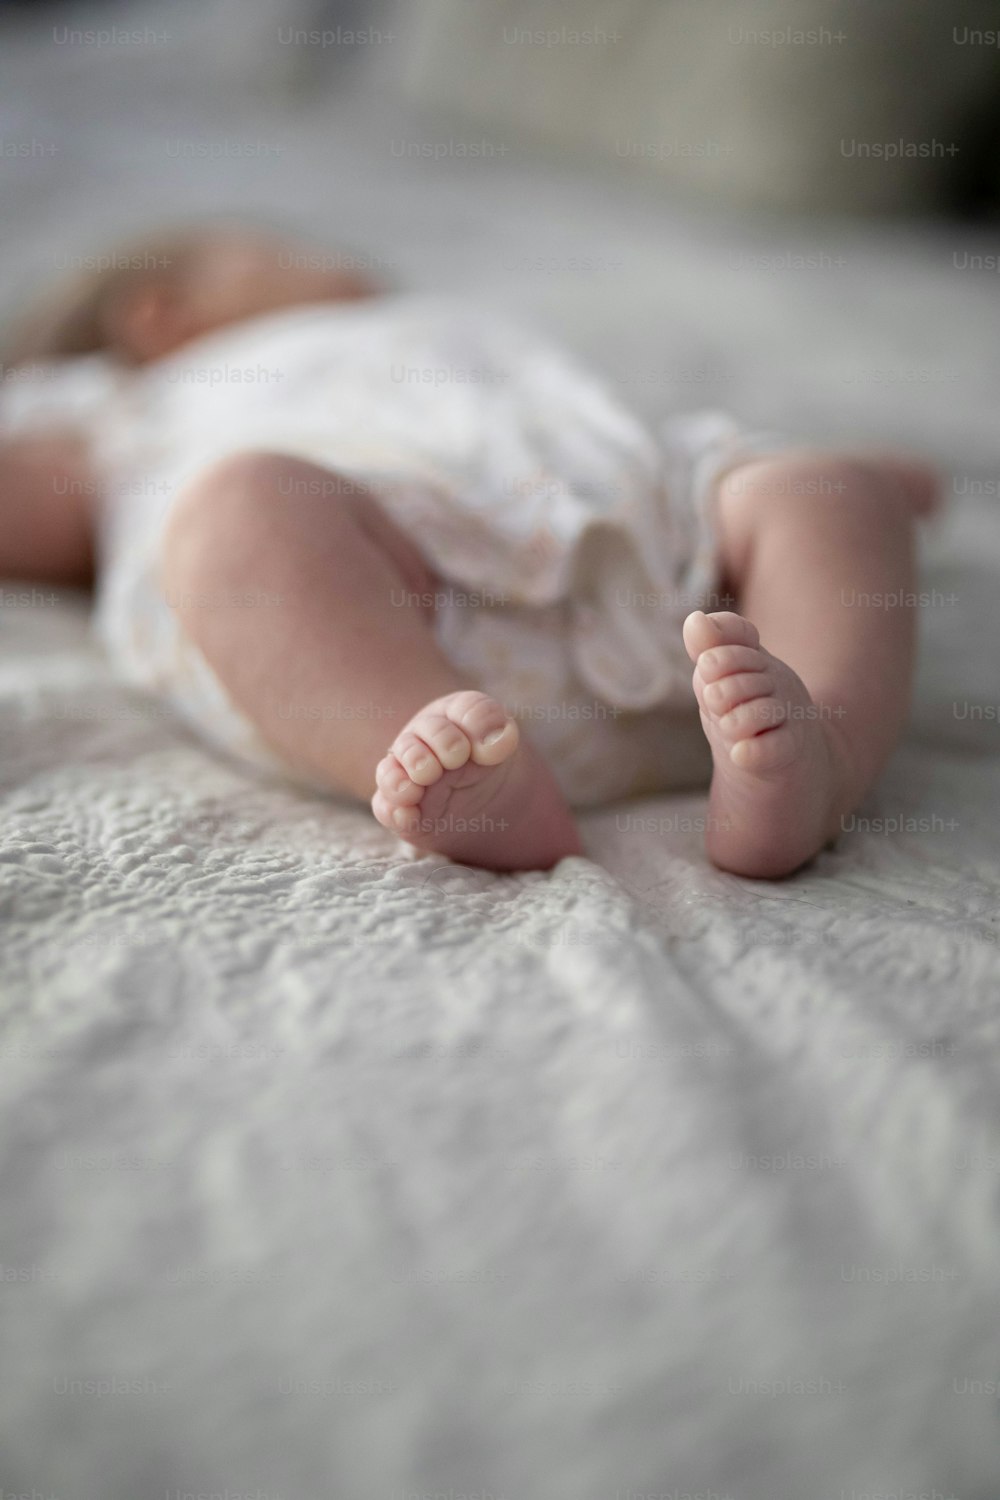 un bebé acostado boca arriba en una cama